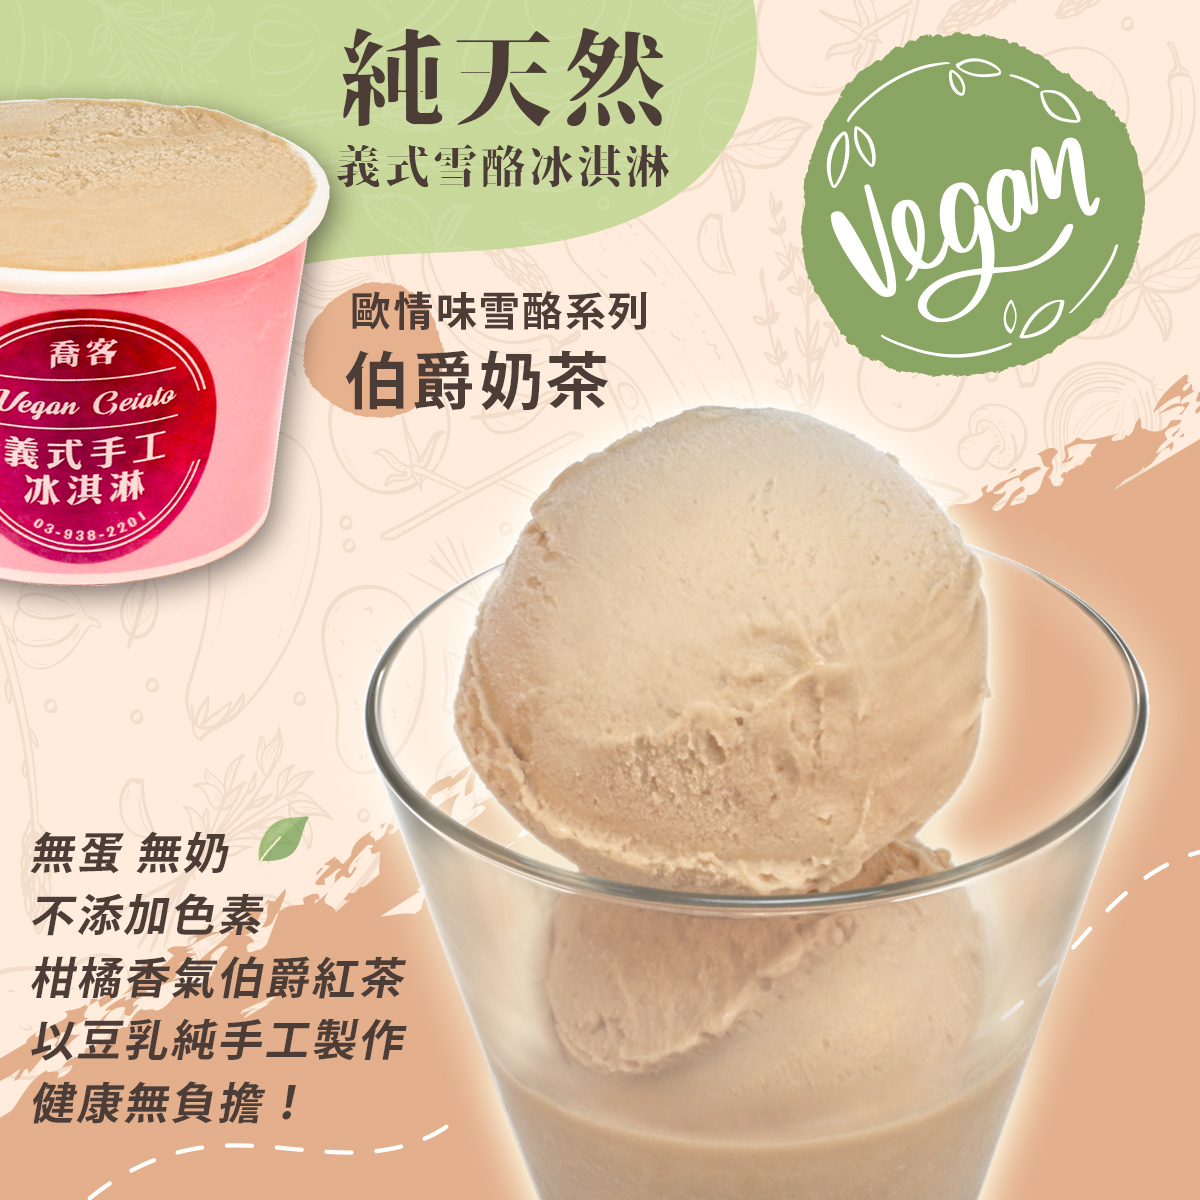 【喬客】歐情味雪酪系列-伯爵奶茶 冰淇淋